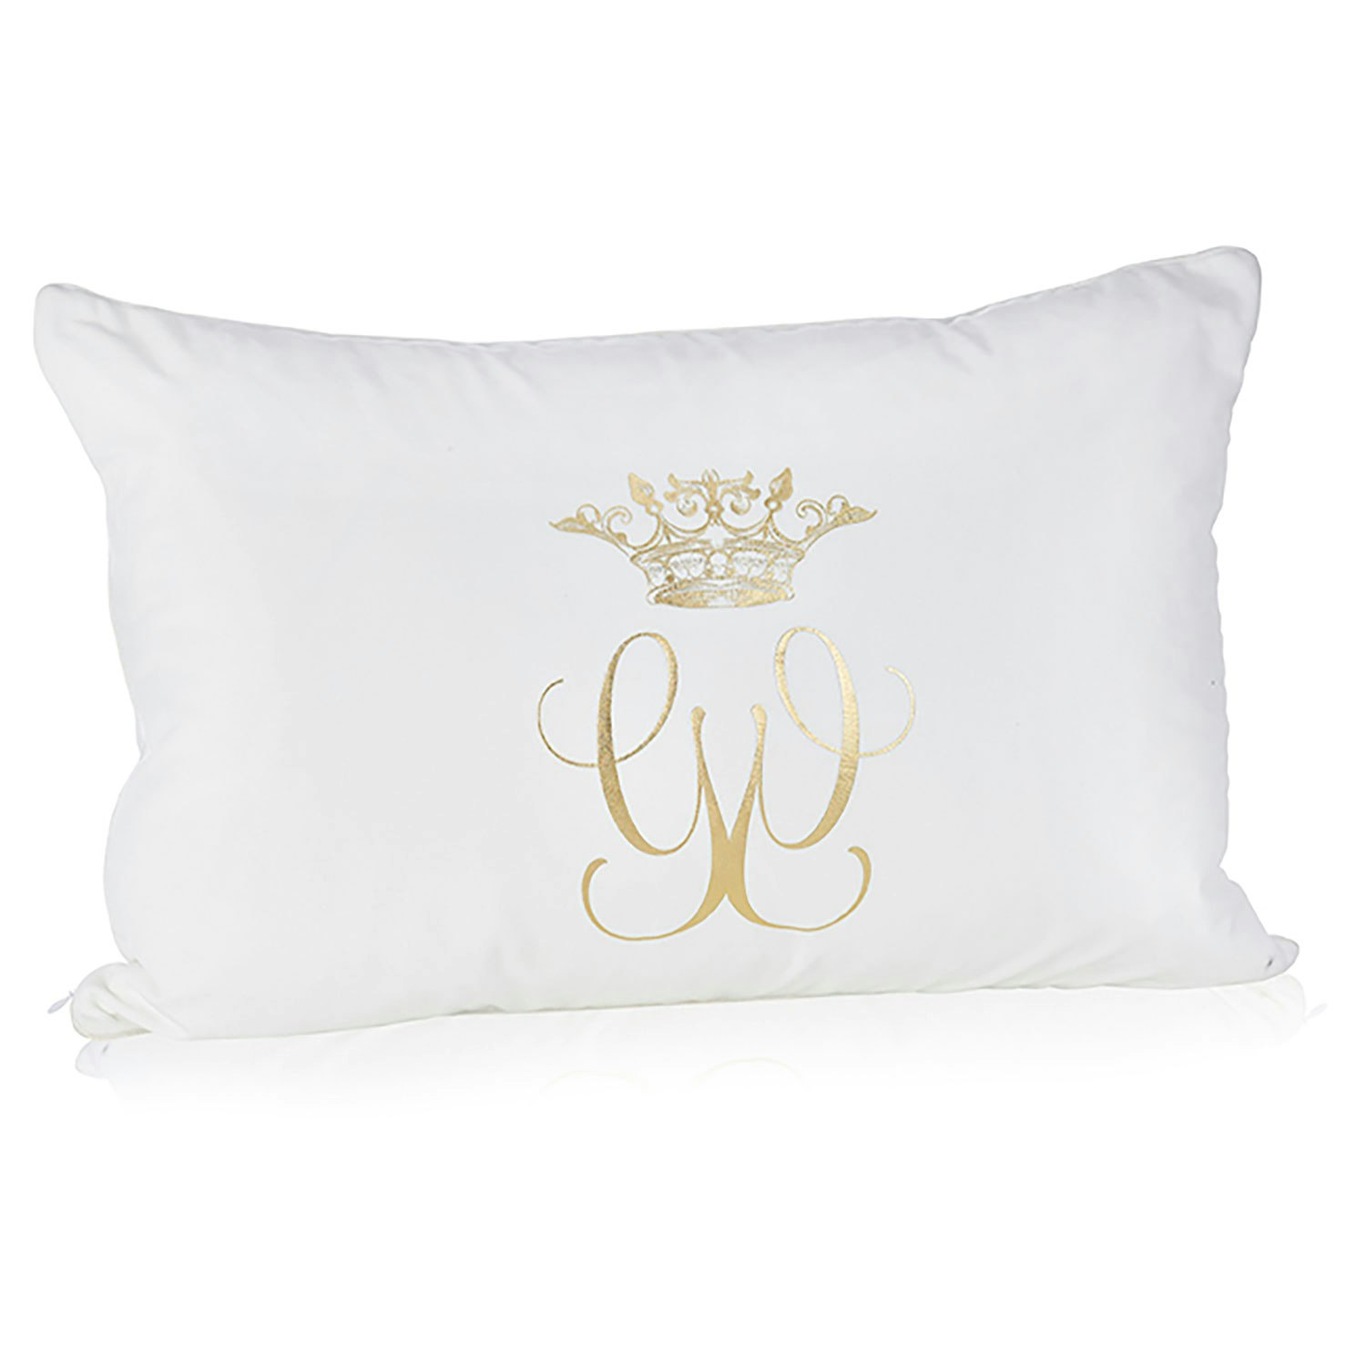 Royal Cushion Cover White, 40x60 cm